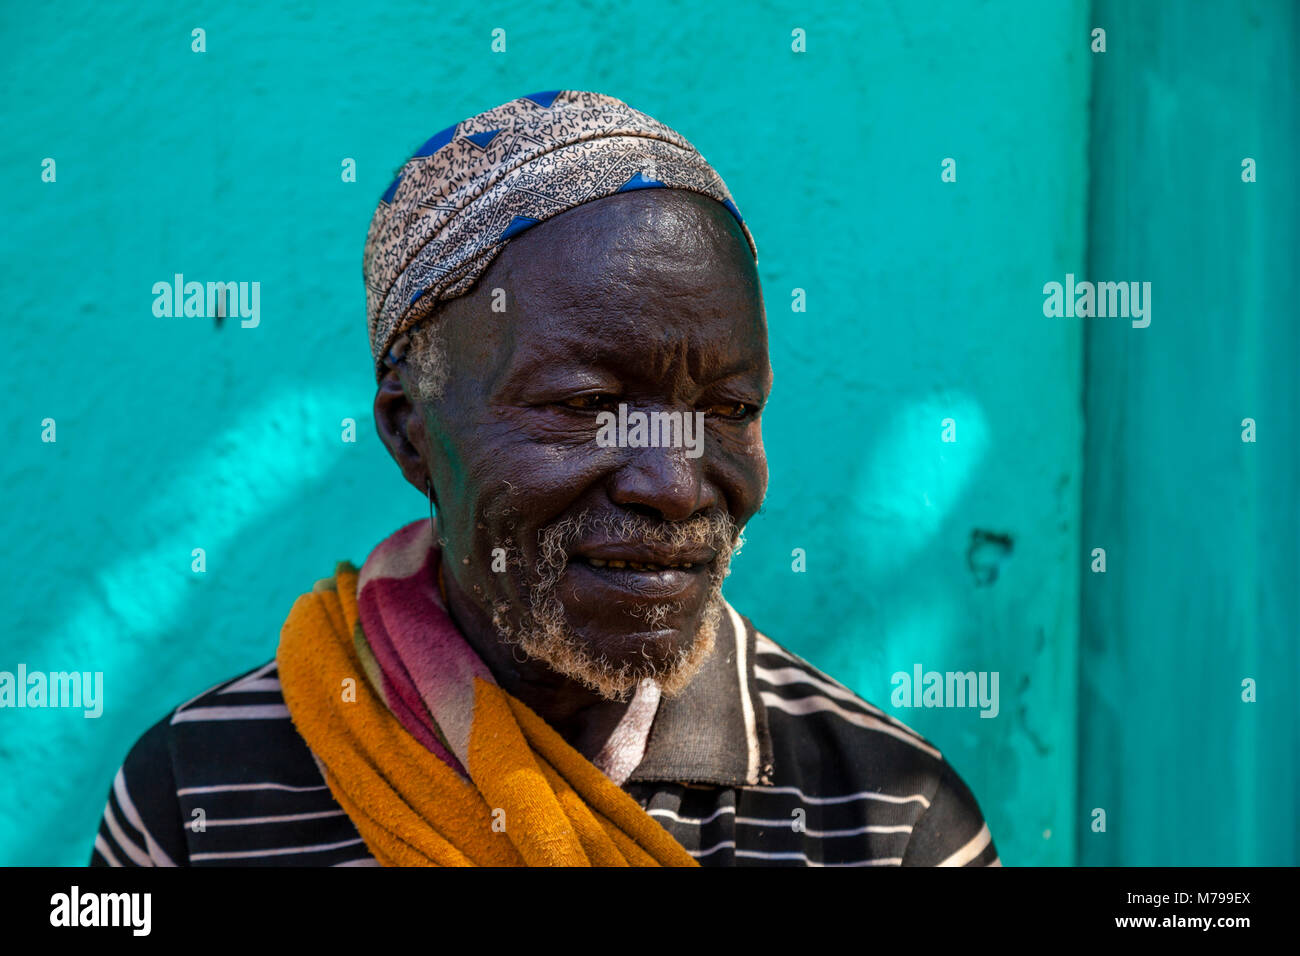 Un homme à l'Hamar Samedi Marché Tribal à Dimeka, vallée de l'Omo, Ethiopie Banque D'Images